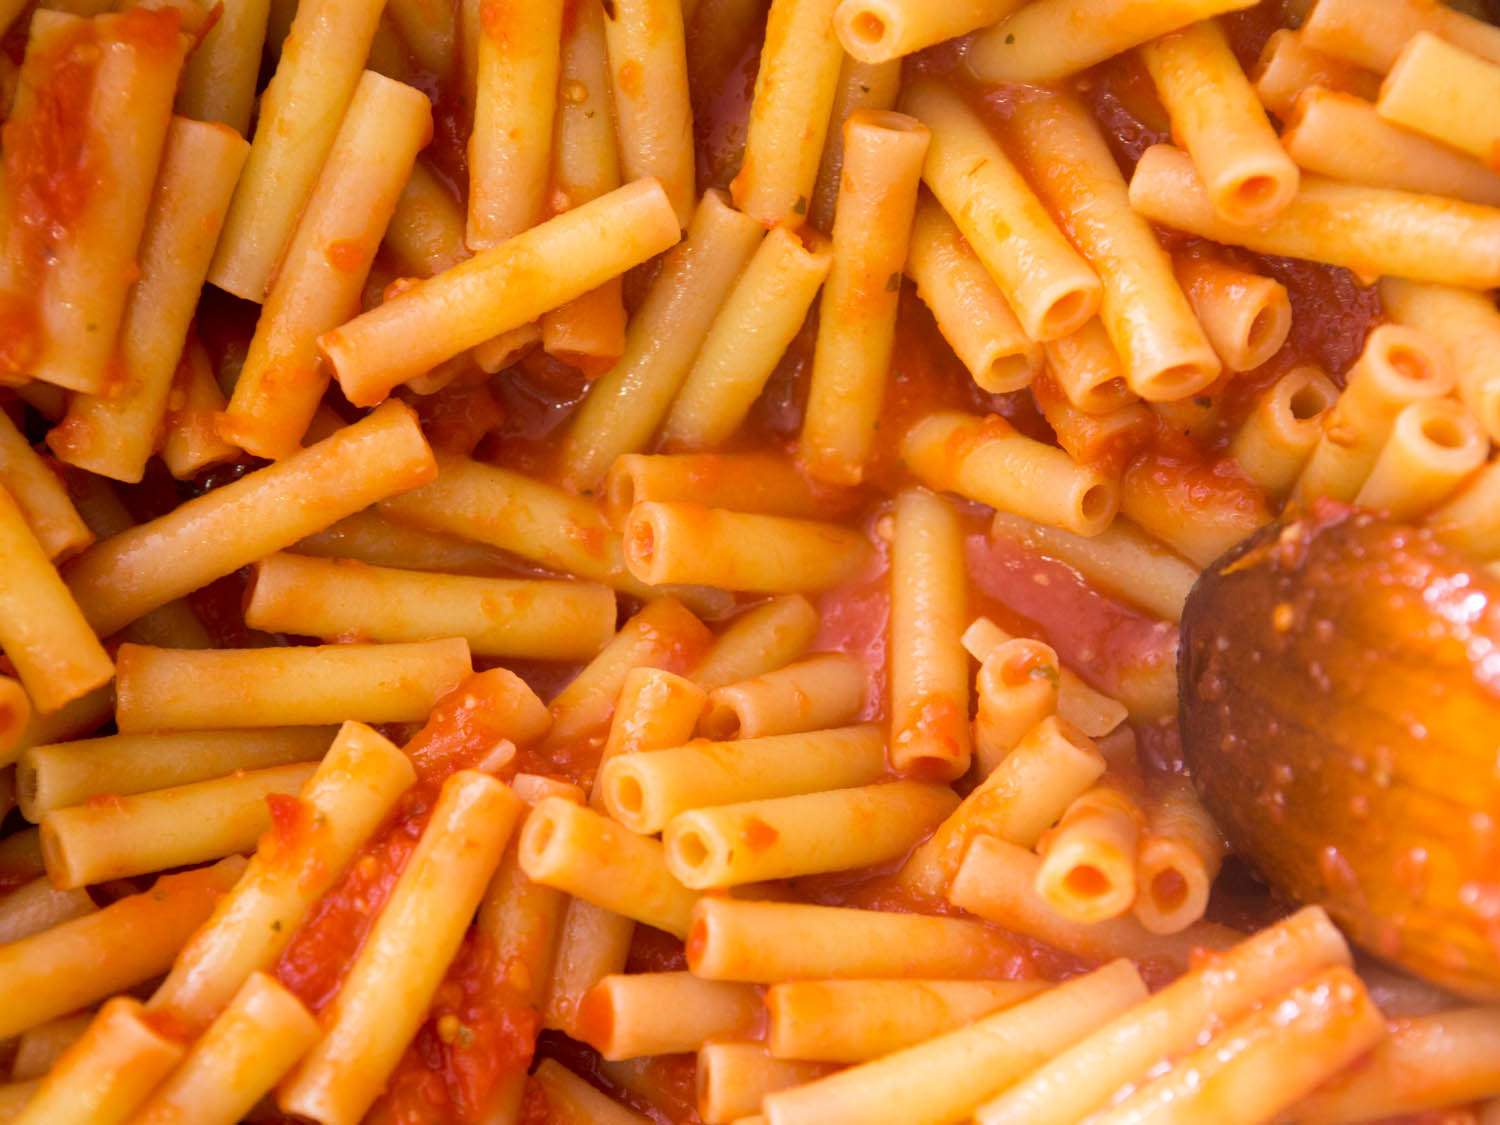 近距离观察煮熟的意大利面被涂上番茄酱。